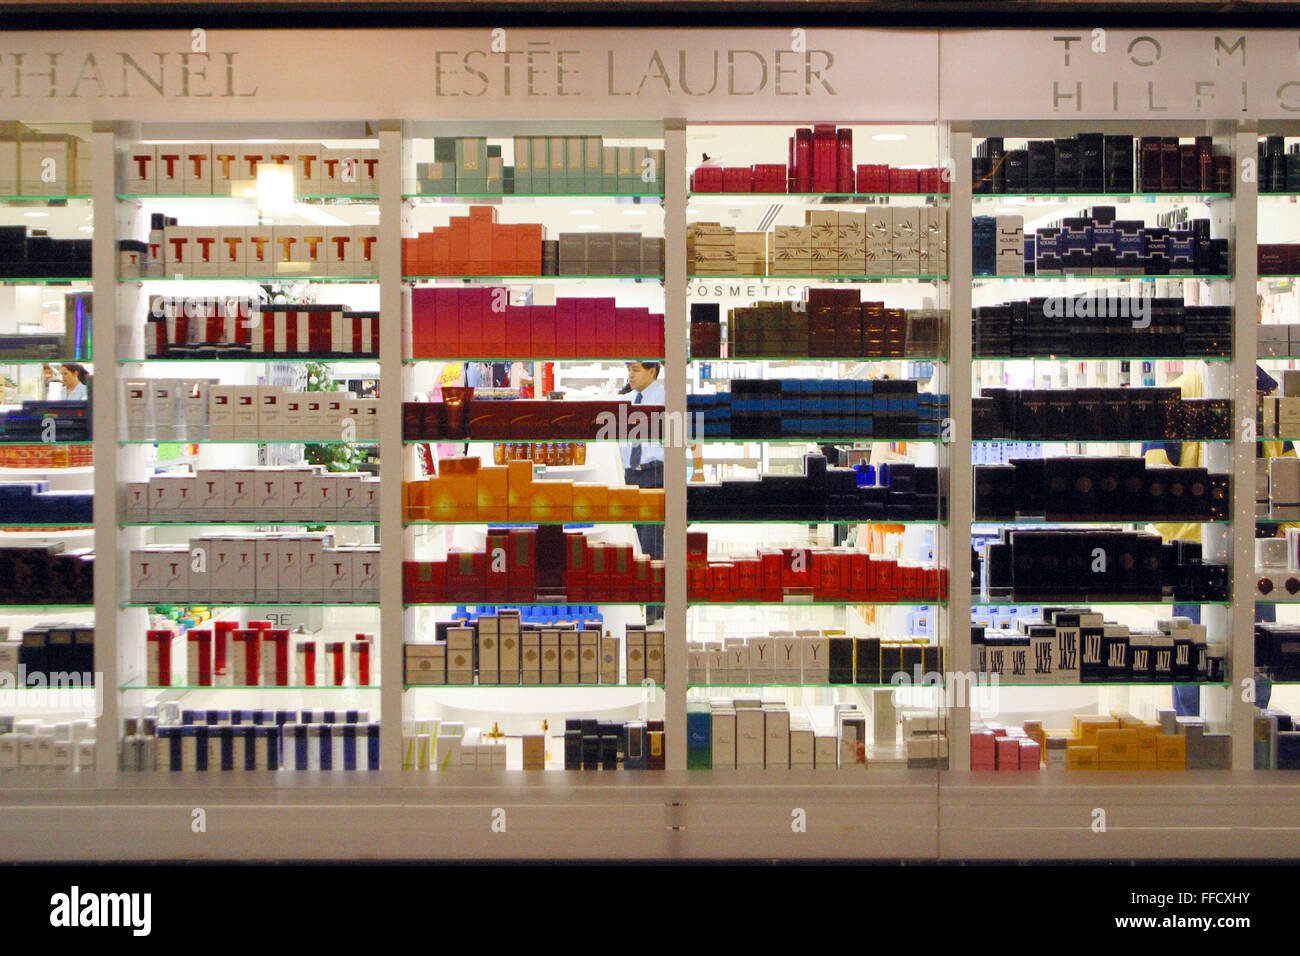 Das Schaufenster eines Parfüm-Shop in einem Einkaufszentrum in Gran Canaria,  Kanarische Inseln, Spanien Stockfotografie - Alamy